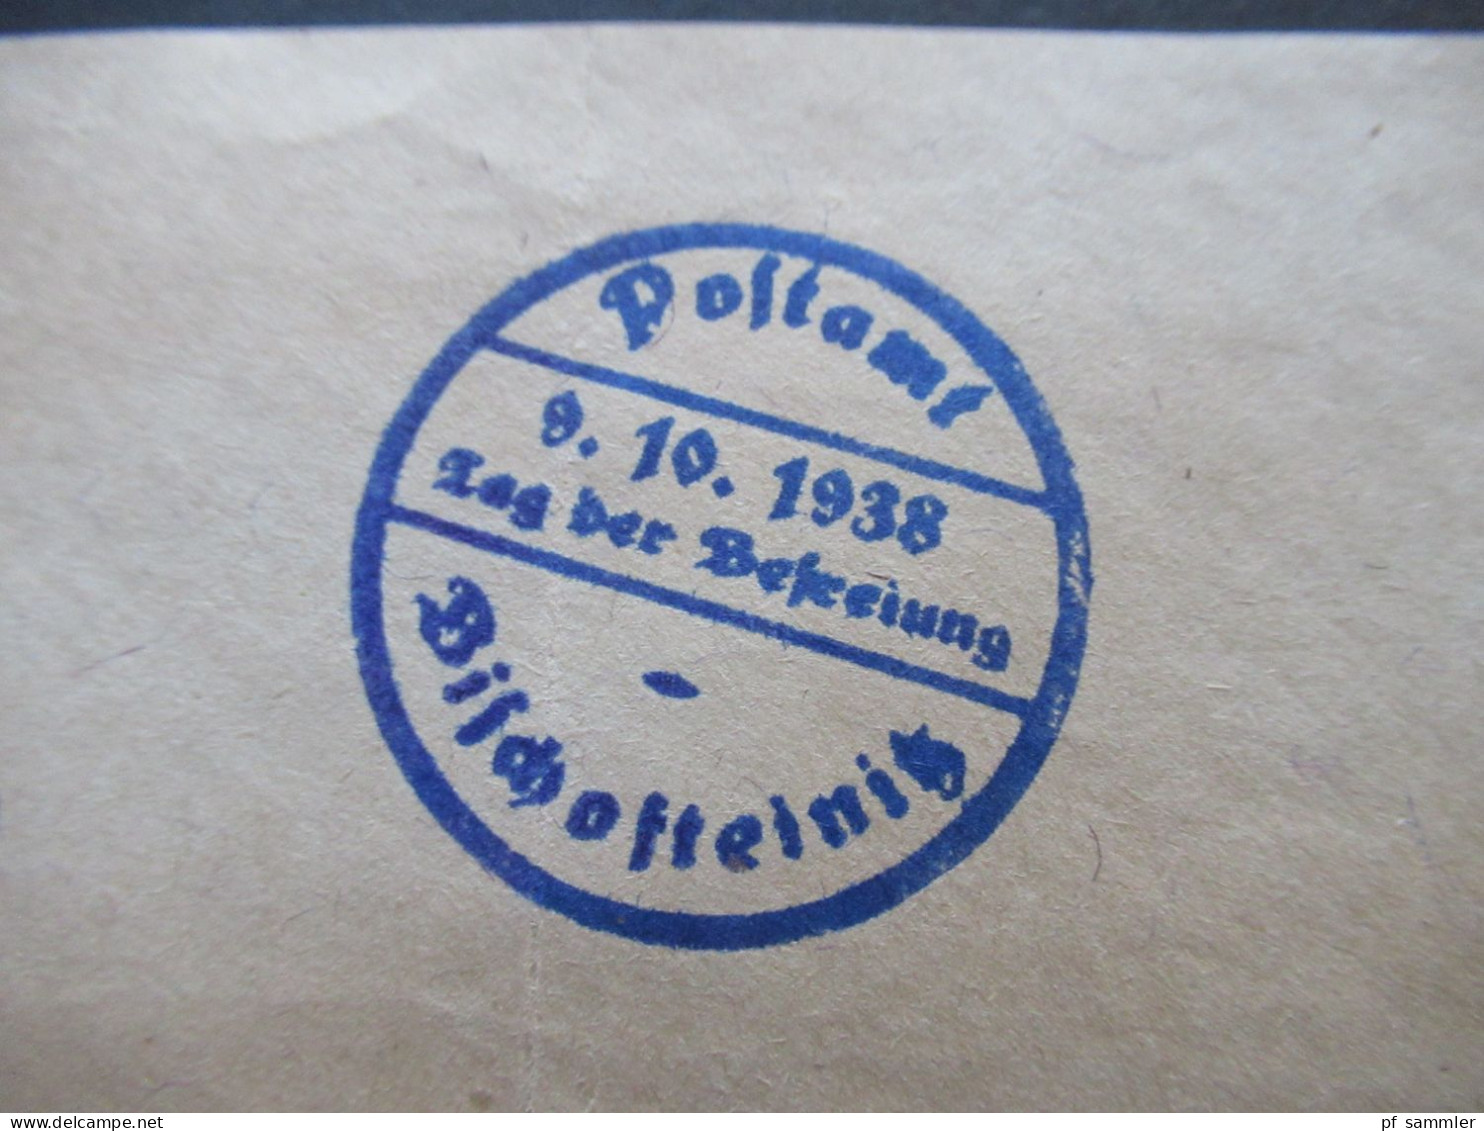 3.Reich Sudetenland Briefstück Mit Befreiungsstempel Postamt Bischofteinitz Sudetenland Tag Der Befreiung 9.10.1938 - Région Des Sudètes